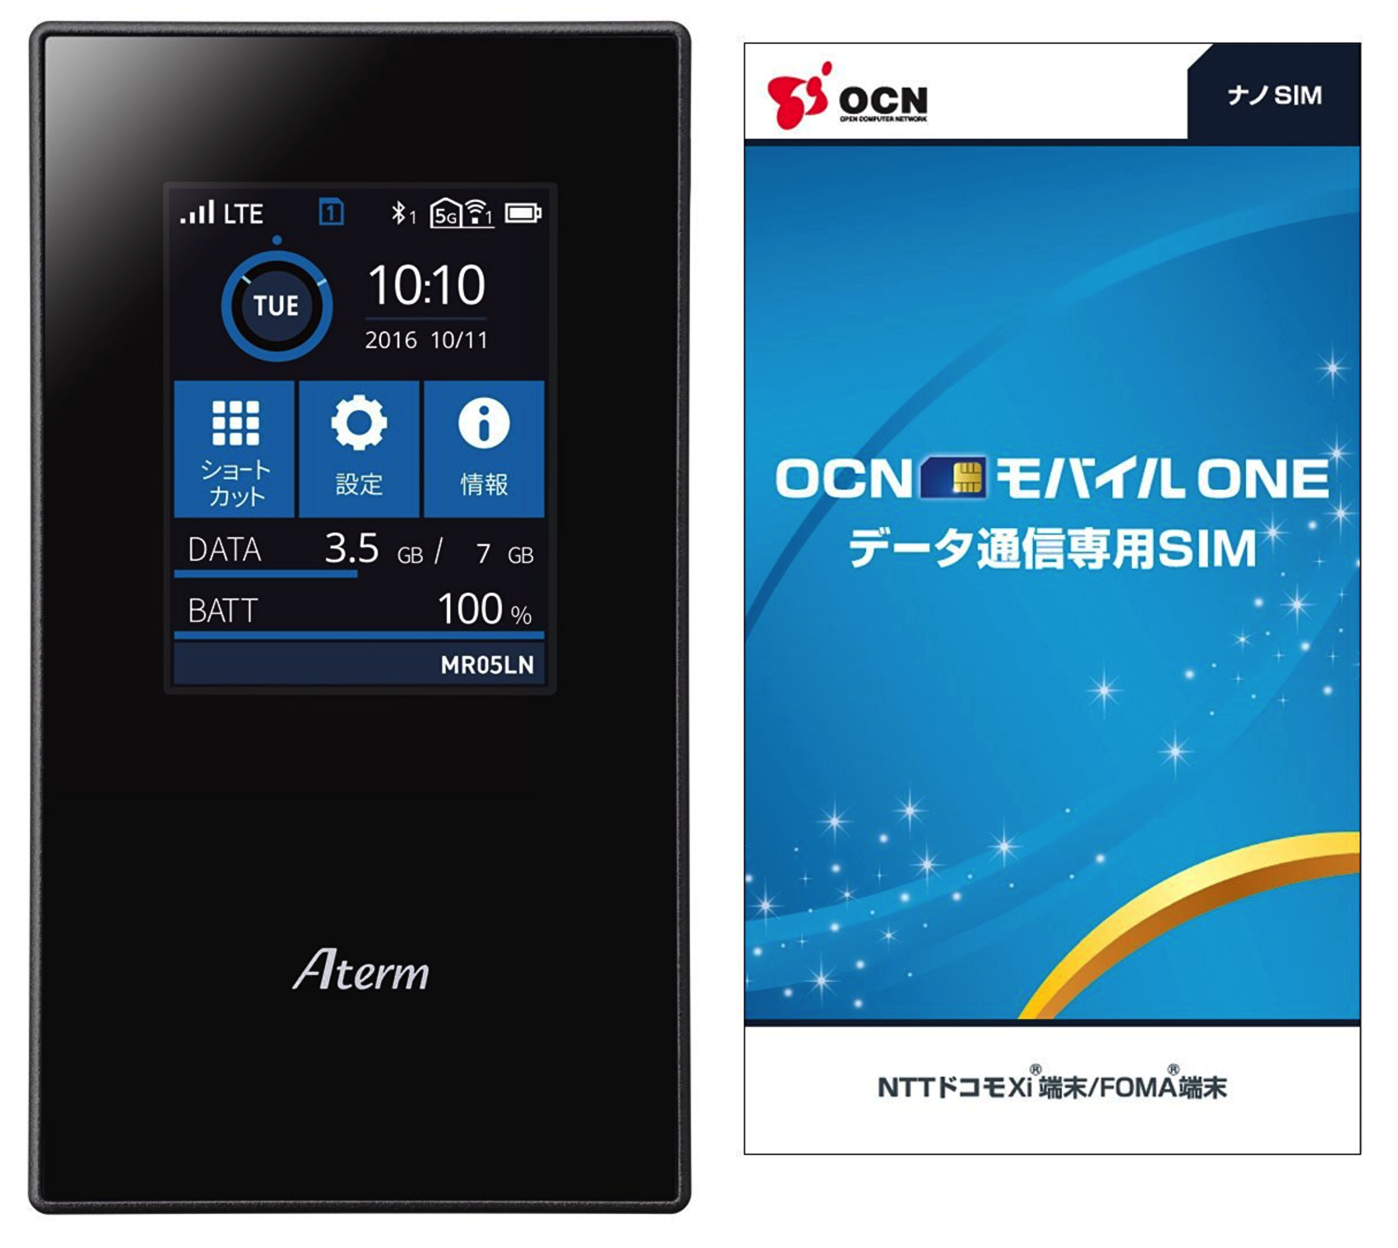 NEC]約3200円も安くなってるAmazon限定のNEC Aterm MR05LN 3B モバイルルーター (OCN モバイル ONE  ナノSIM付) は今が買い？ ｜ ツインズパパの徒然日記 Ver.2